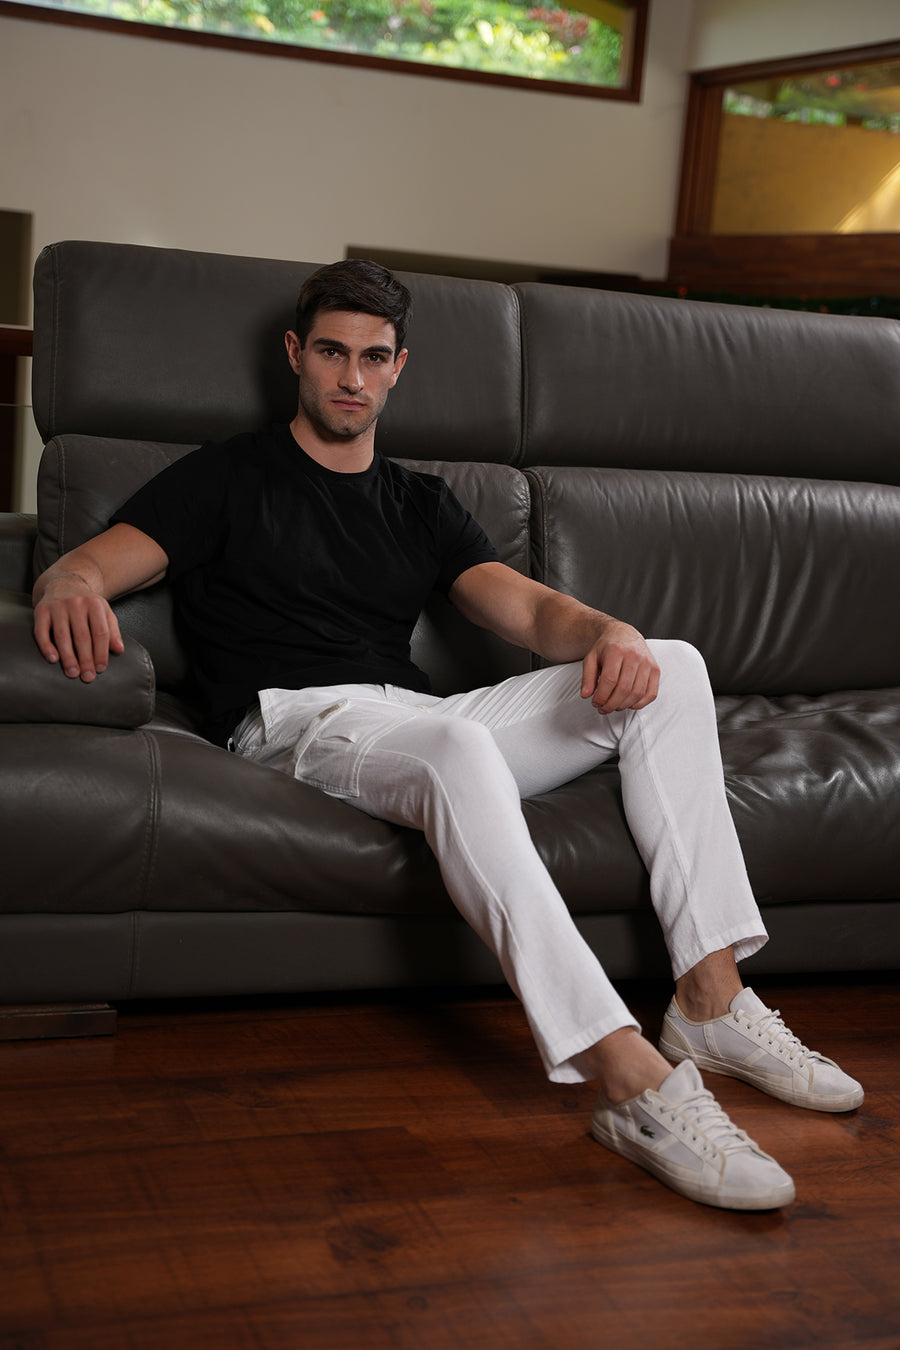 Marcel - Linen Cotton Cargo Trouser - White